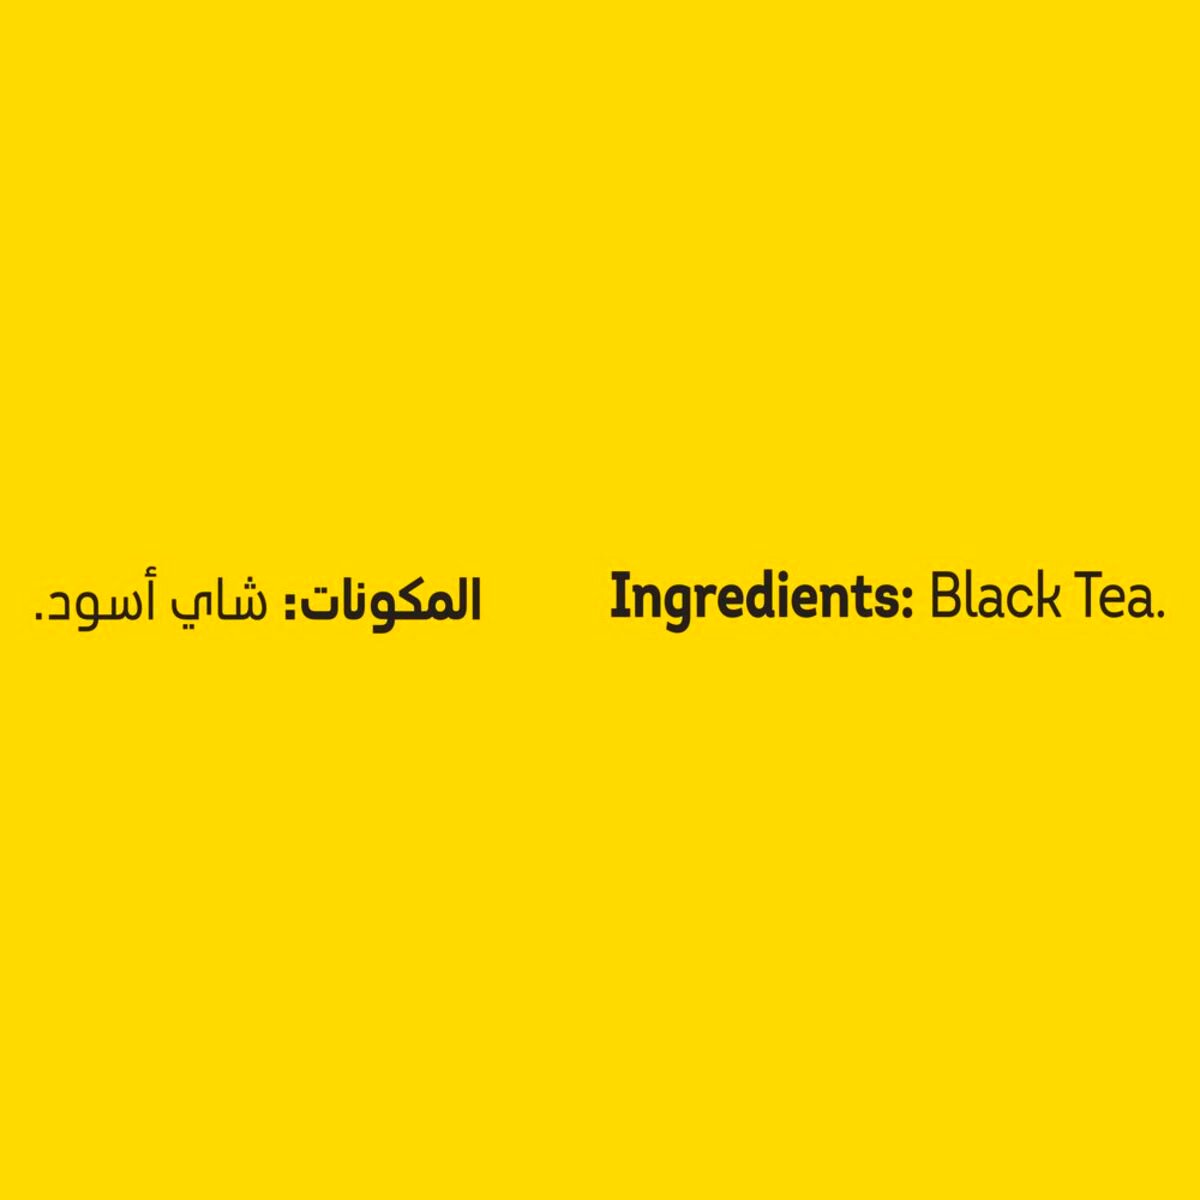 ليبتون شاي أسود العلامة الصفراء 100 كيس شاي